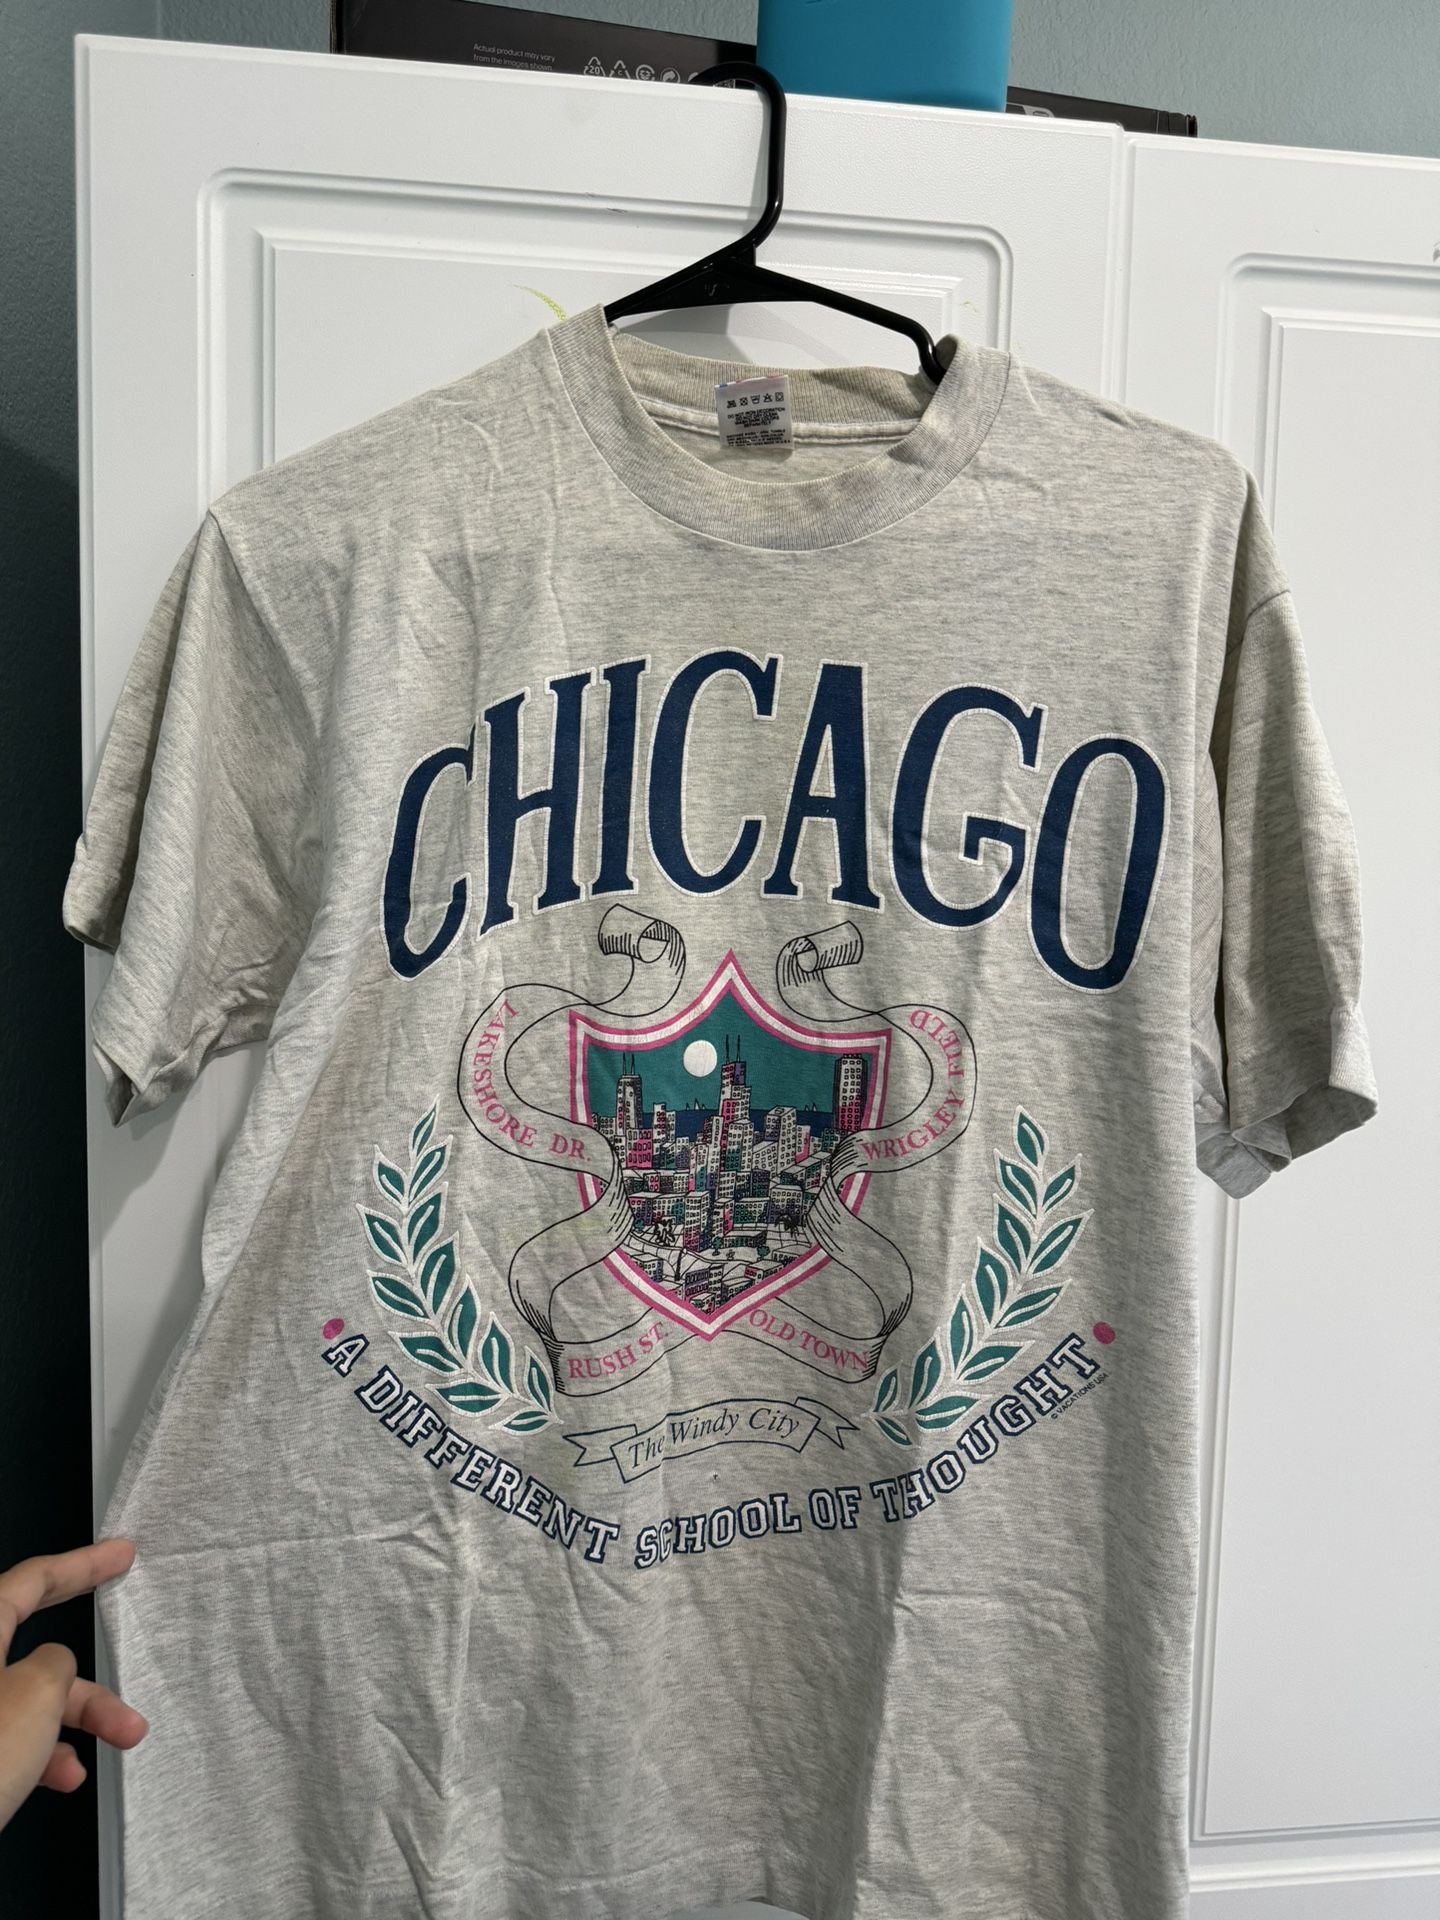 Chicago Shirt